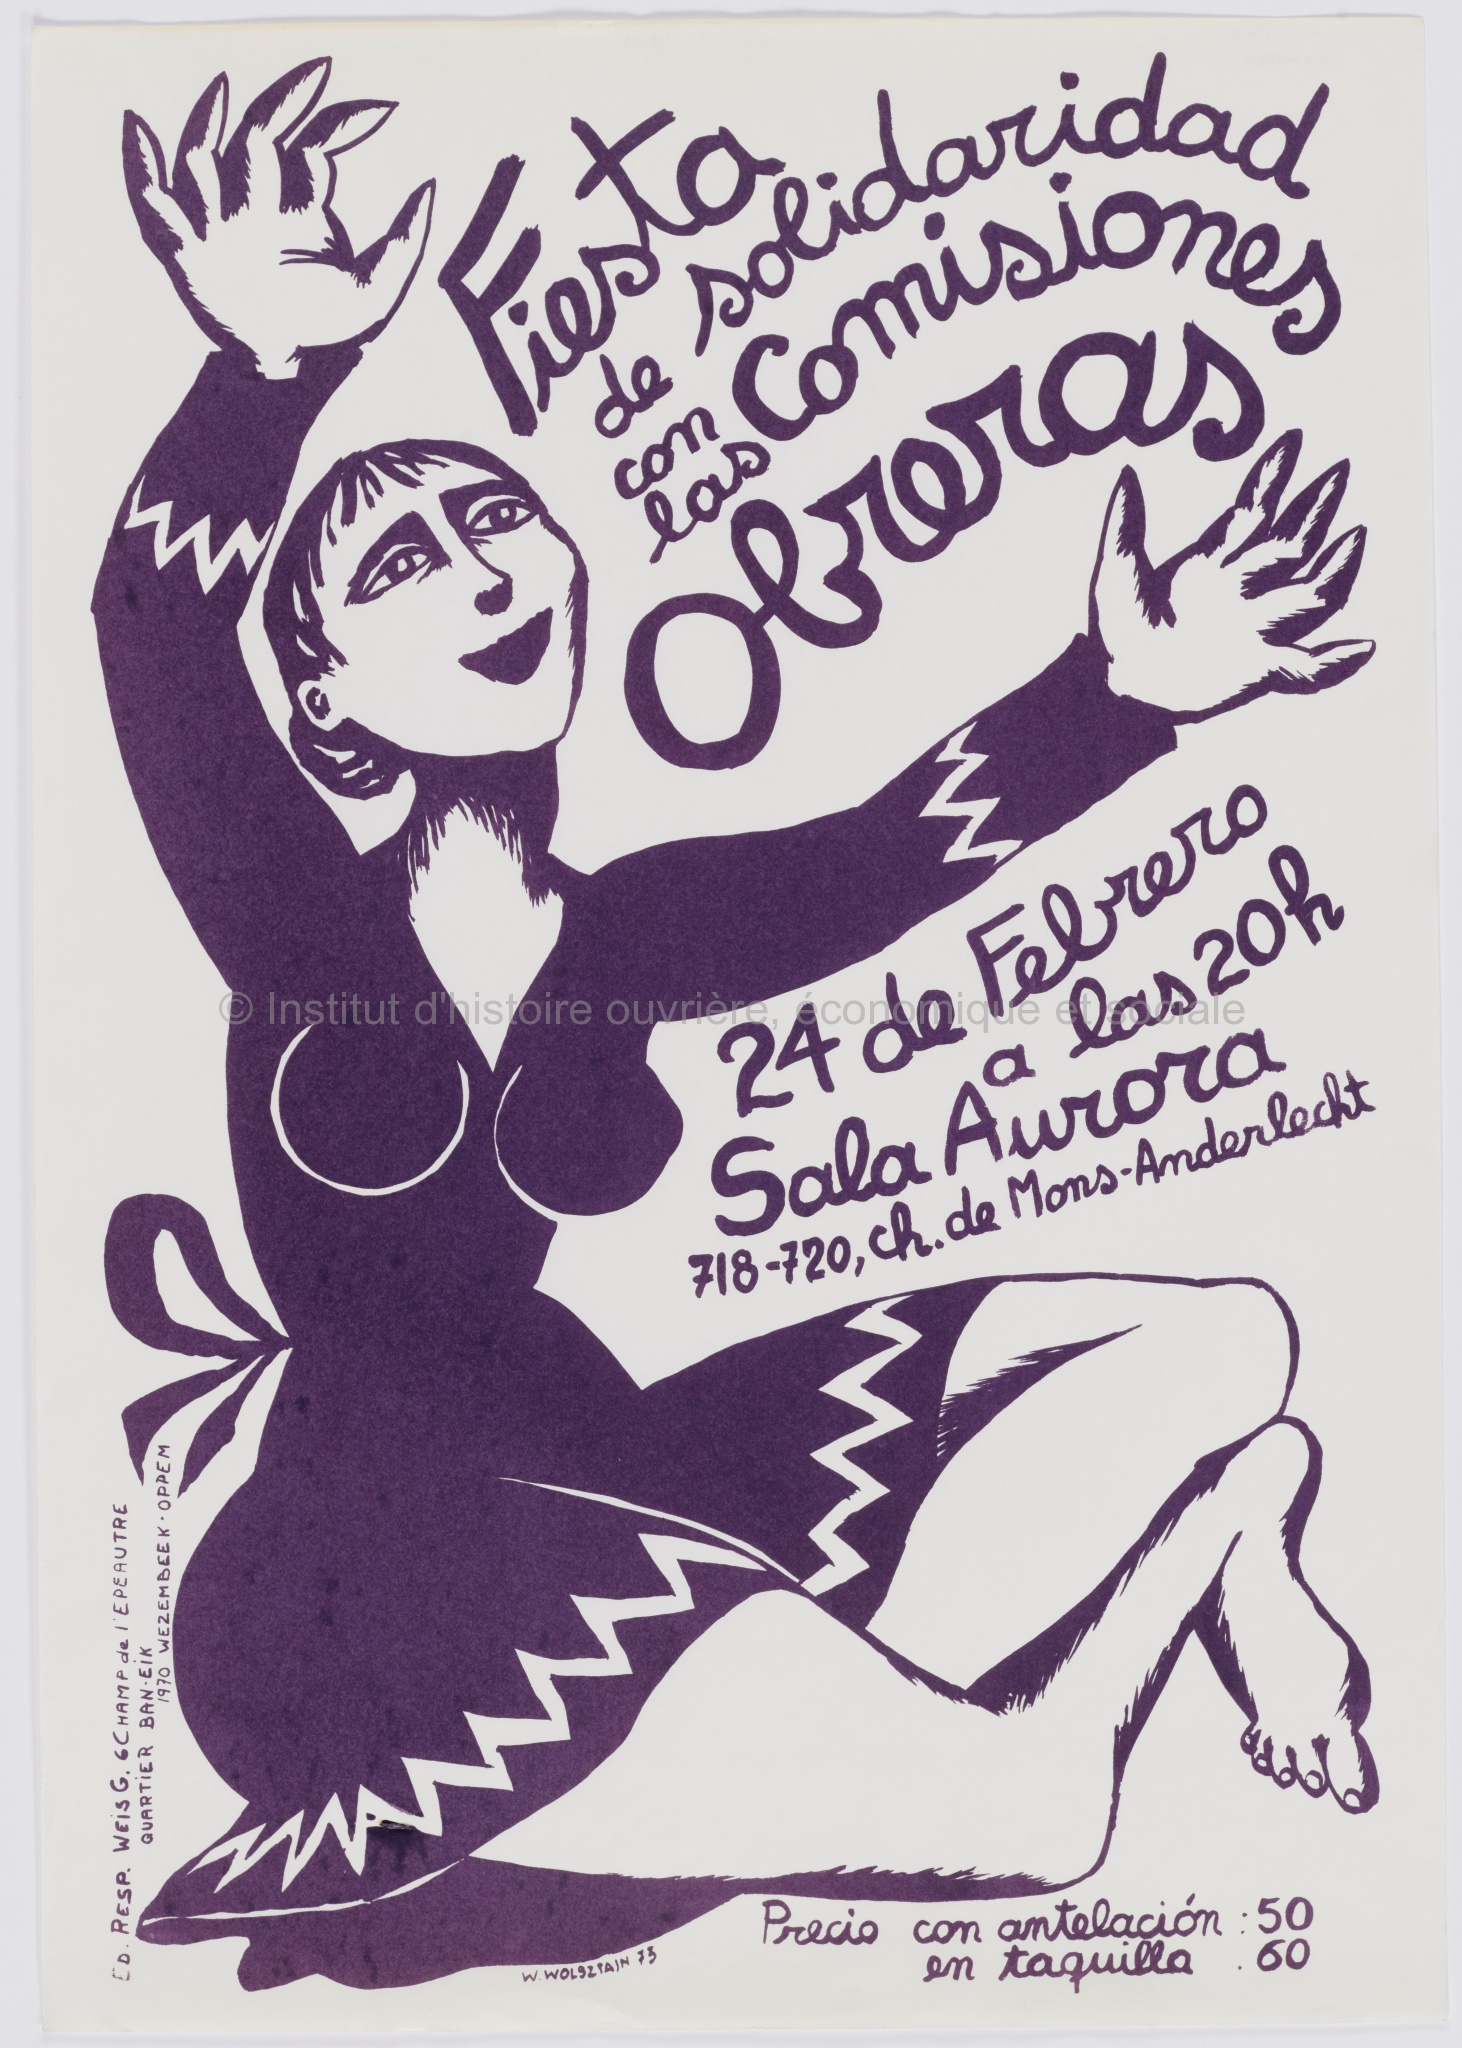 Fiesta de solidaridad con las Comisiones obreras : 24 de febrero à las 20h Sala Aurora